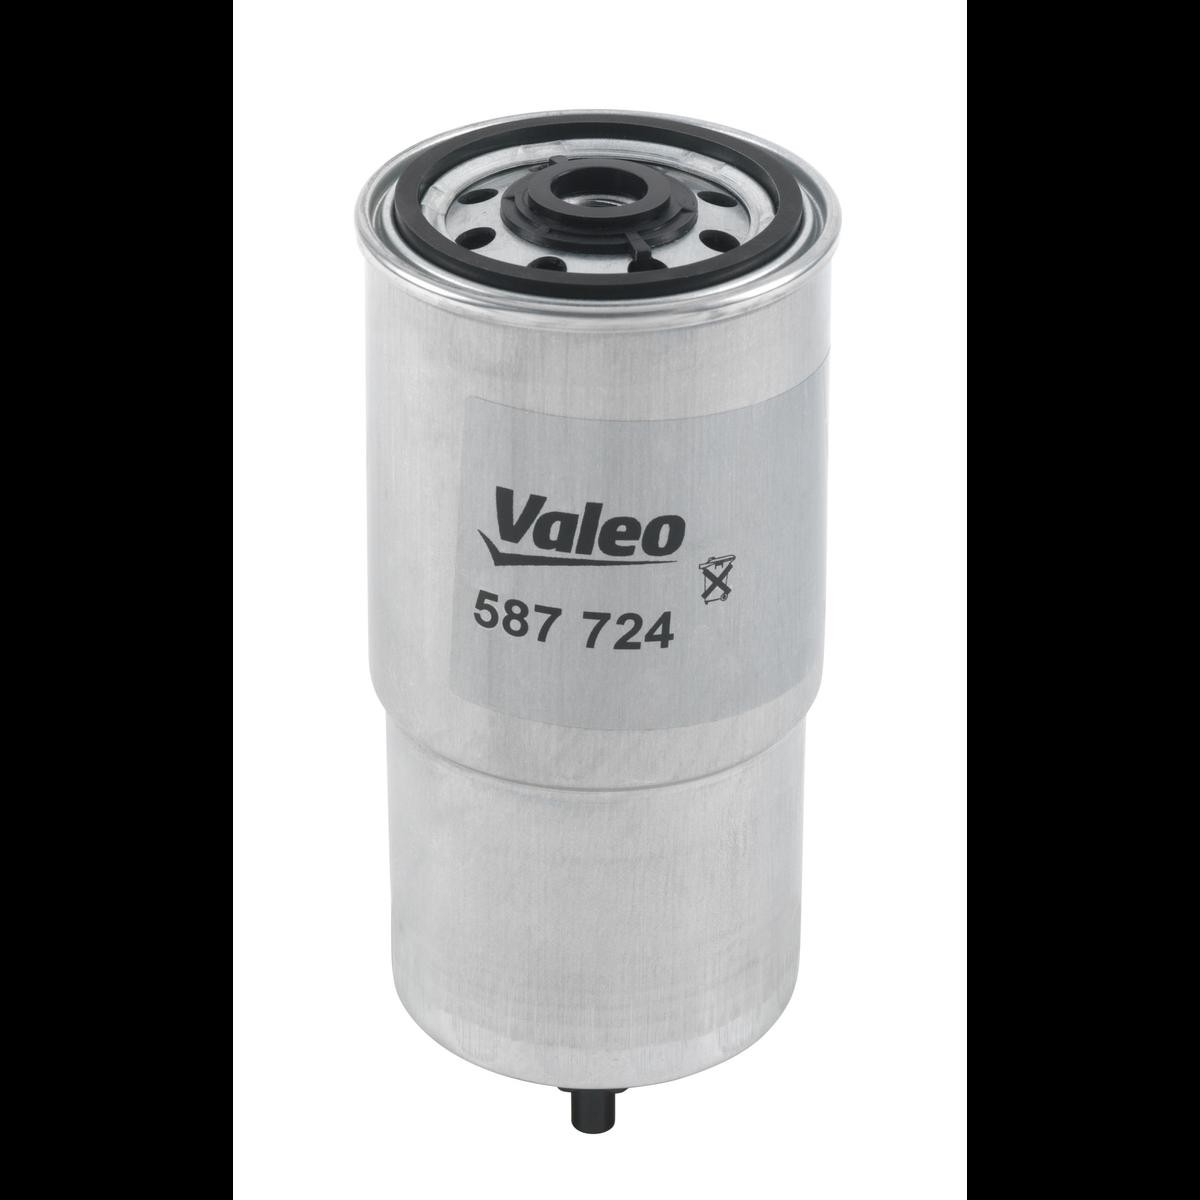 VALEO 587724 Fuel filter 16403J5500